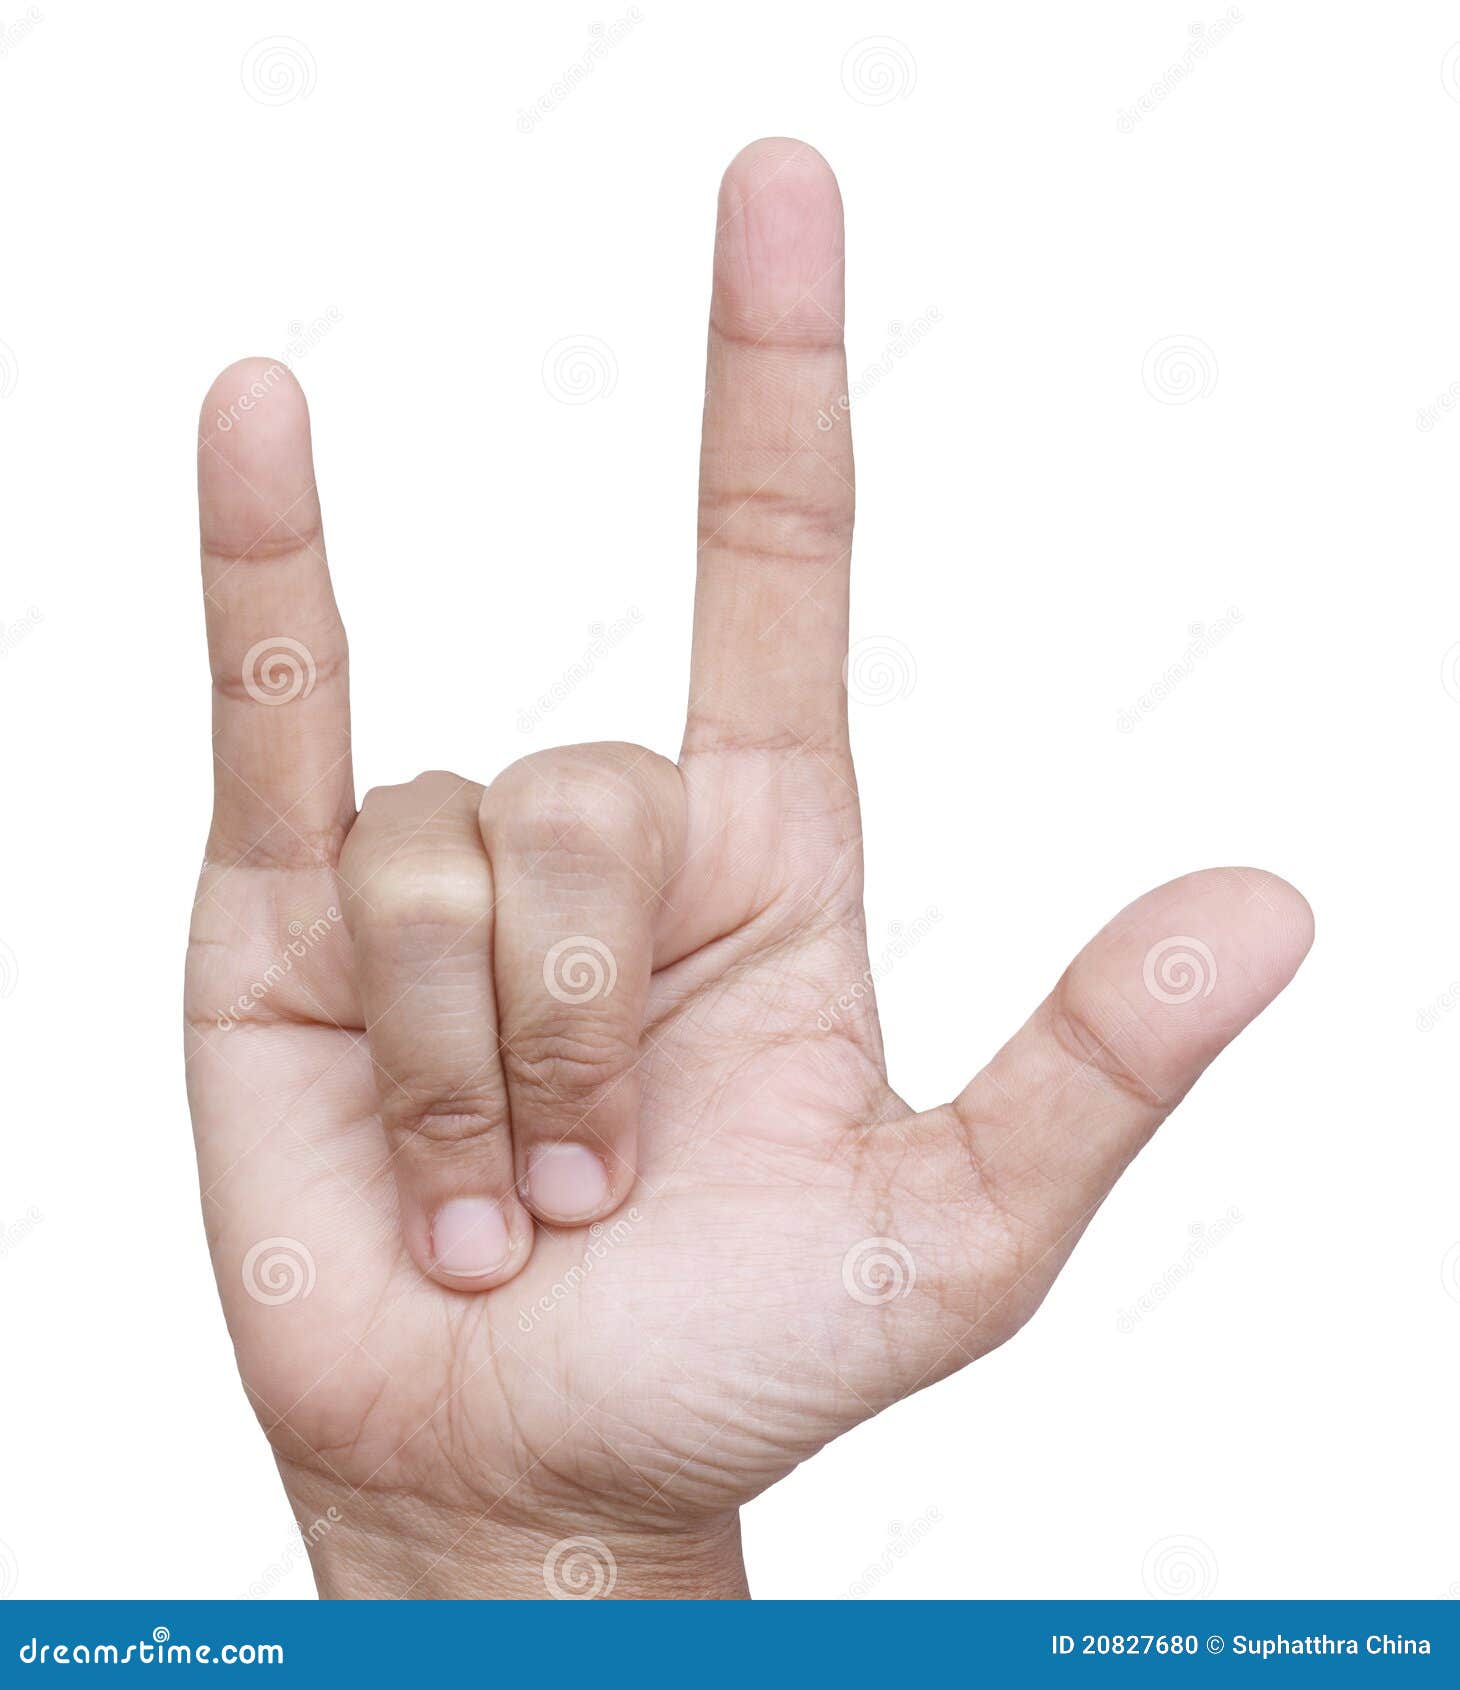 39,832 Love Hand Gesture Stock Vectors and Vector Art | Shutterstock